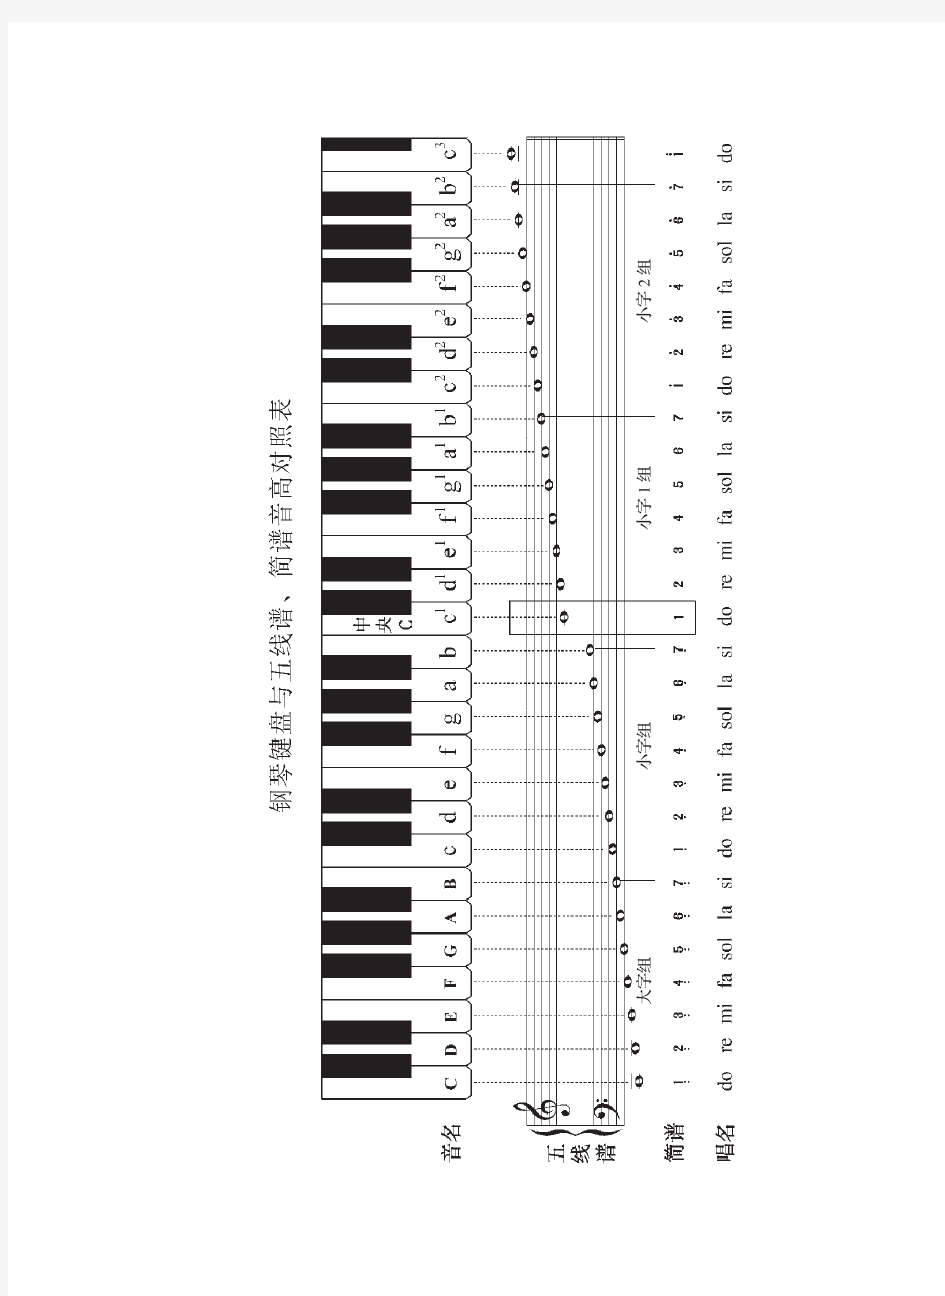 钢琴键盘与五线谱、简谱音高对照表